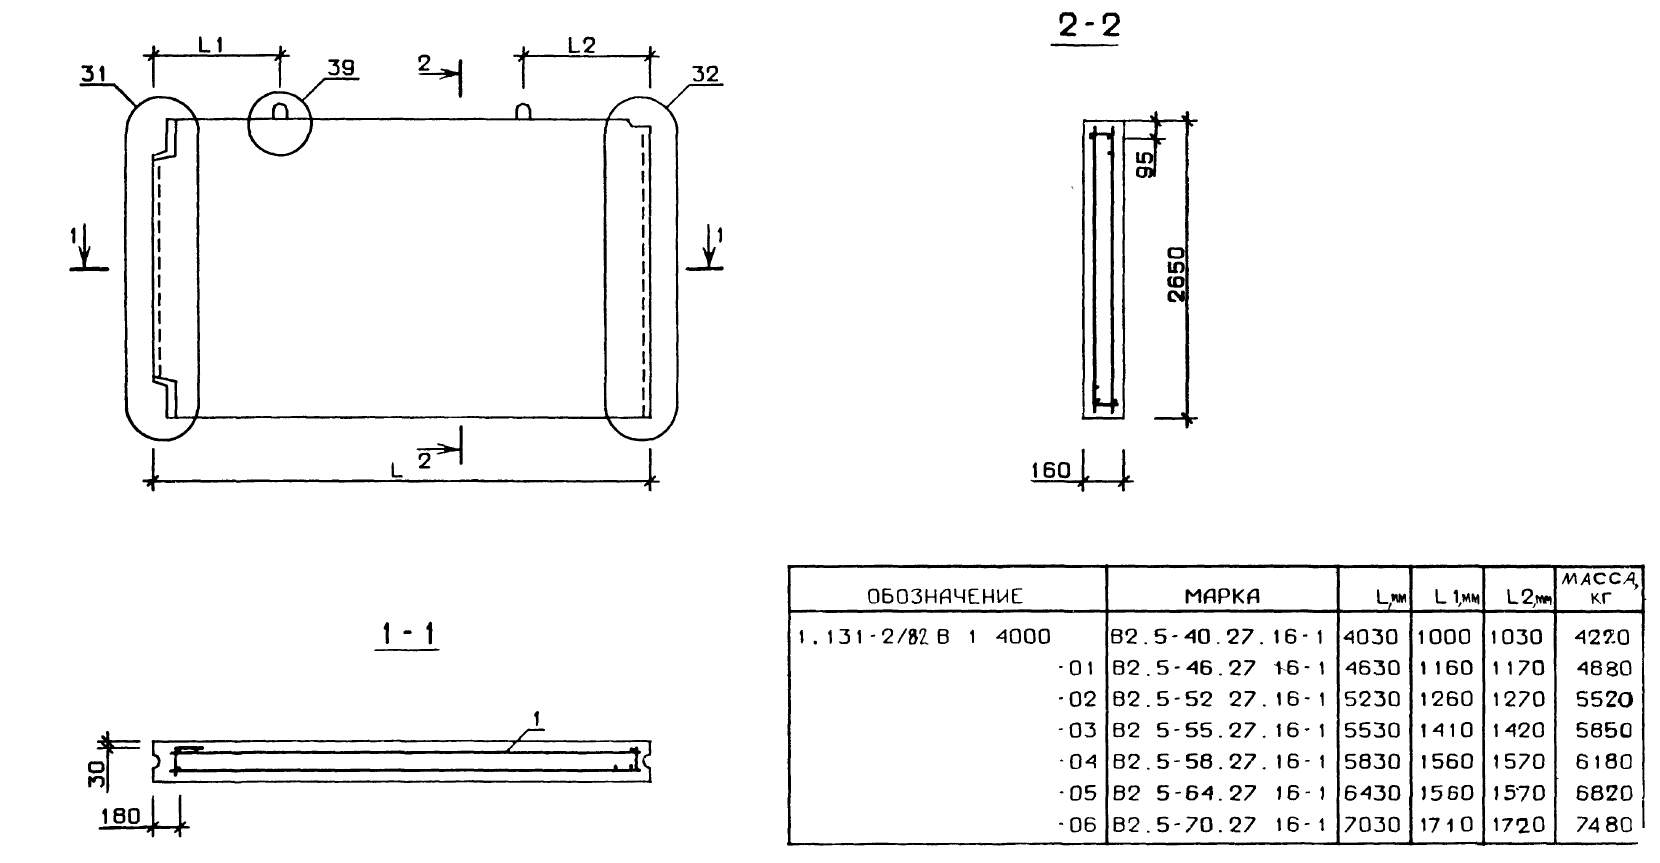 Внутренняя поперечная стеновая панель В2.5-40.27.16-1 серия 1.131-2/82